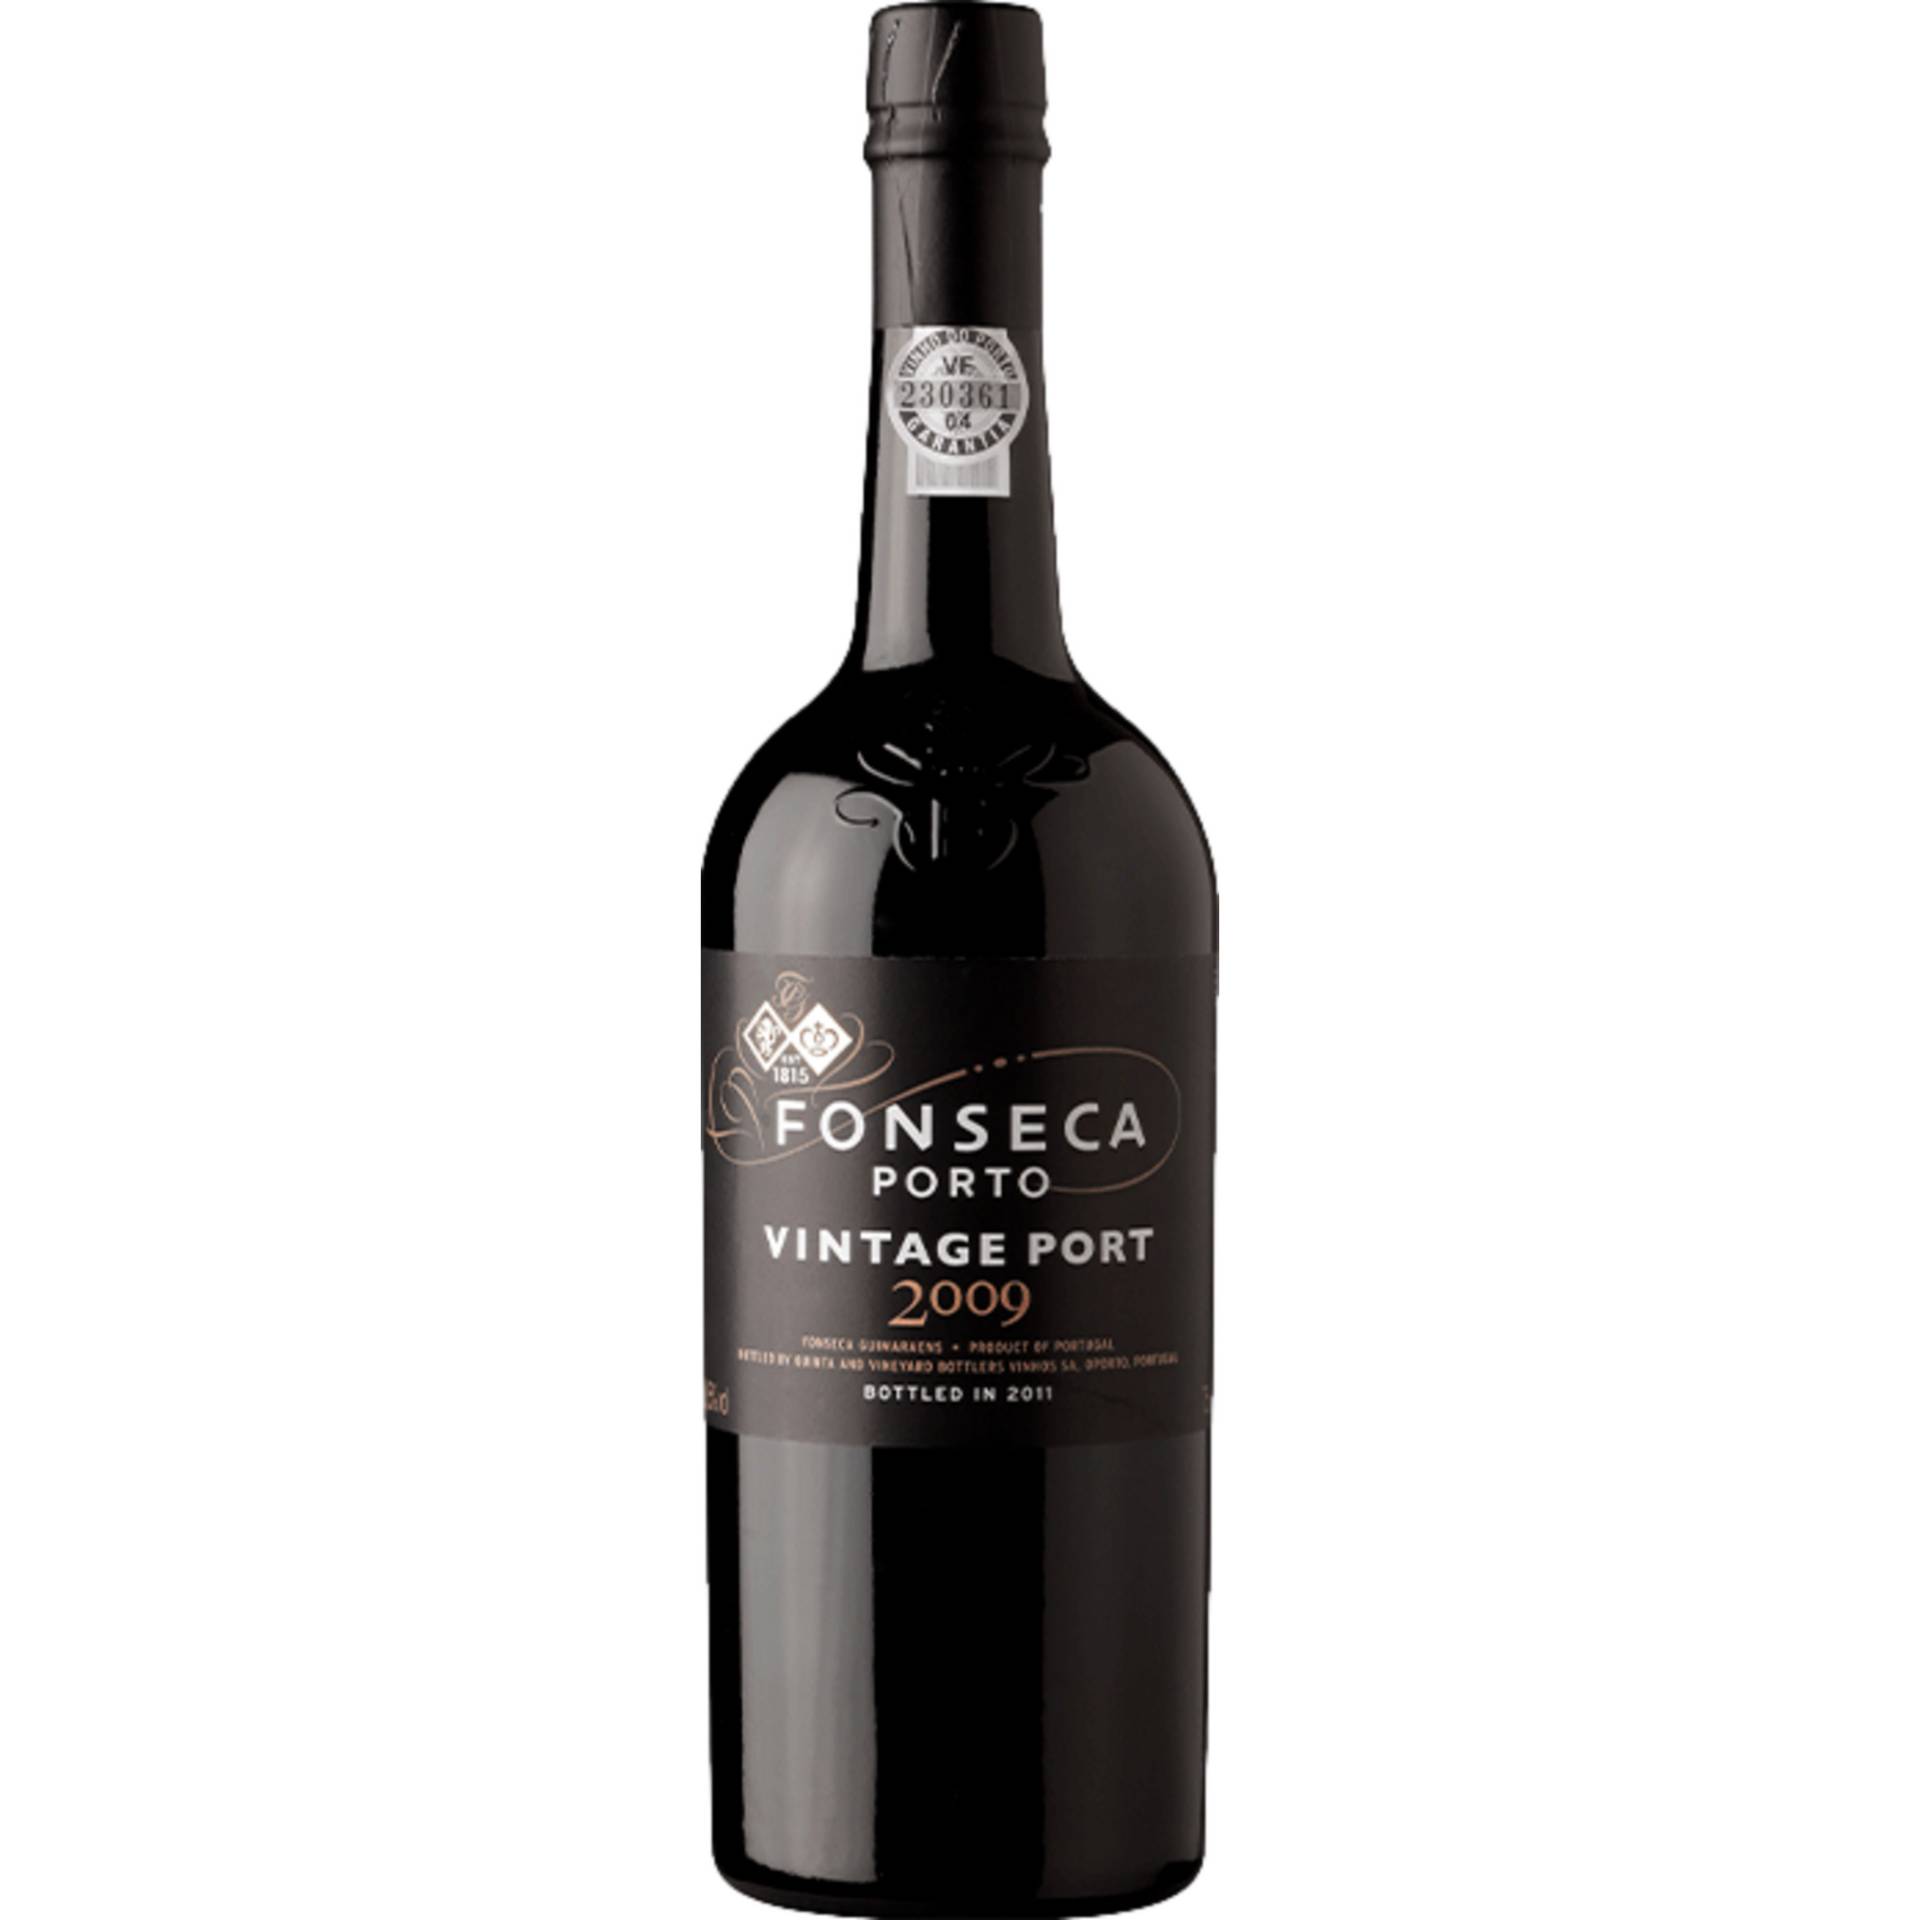 Fonseca Vintage Port, Vinho do Porto DOC, 0,75 L, 20% Vol., Douro, 2009, Spirituosen von Quinta and Vineyard Bottlers Vinhos SA,Rua Do Choupelo, 250, 4400-088, V. N. Gaia